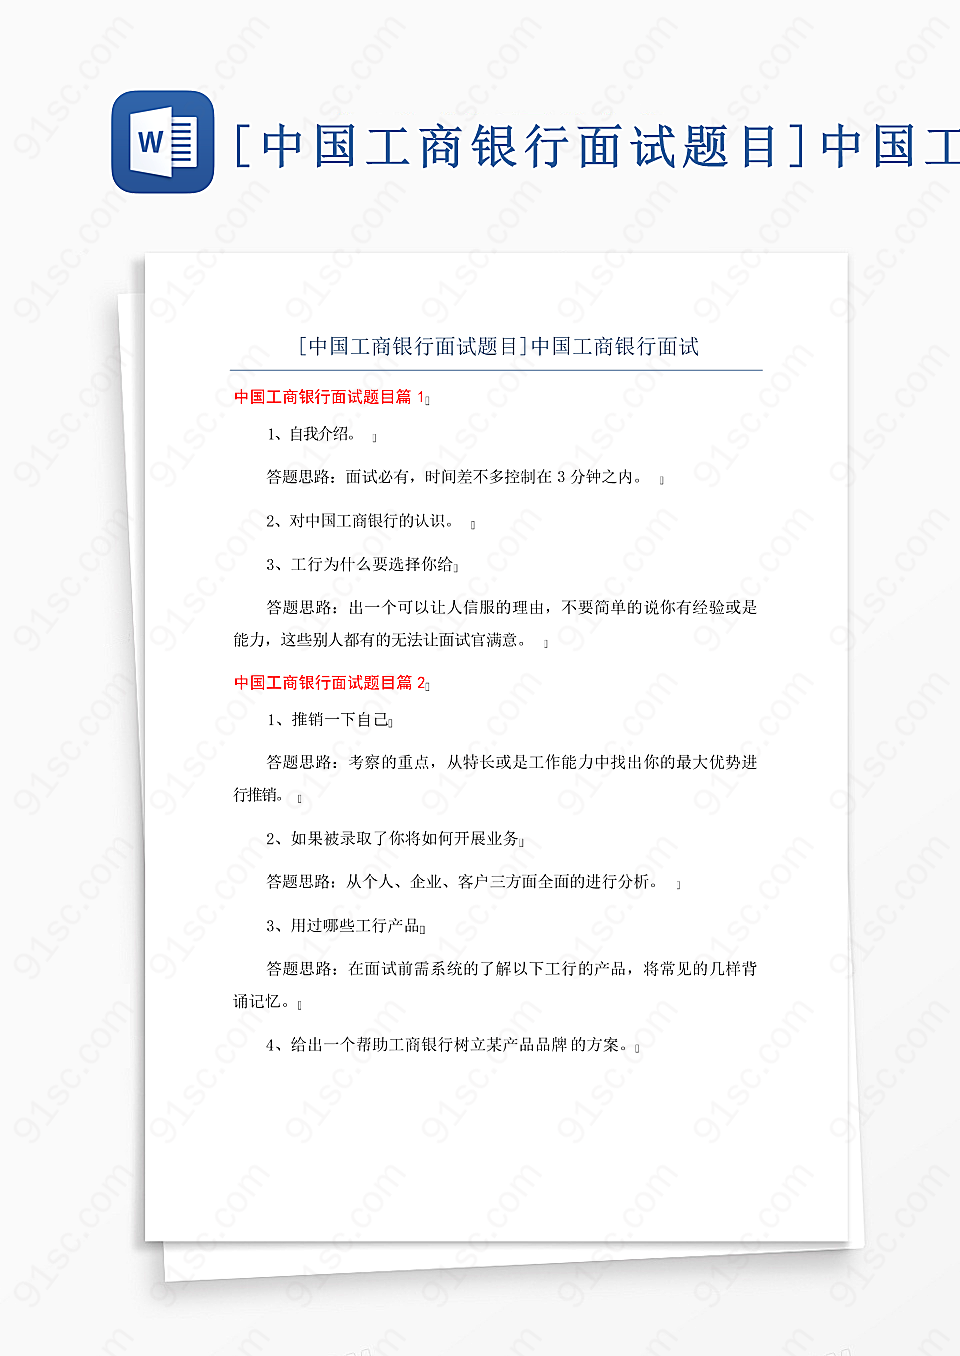 中国工商银行面试常见问题及答案解析试卷真题校园教育Word模板下载